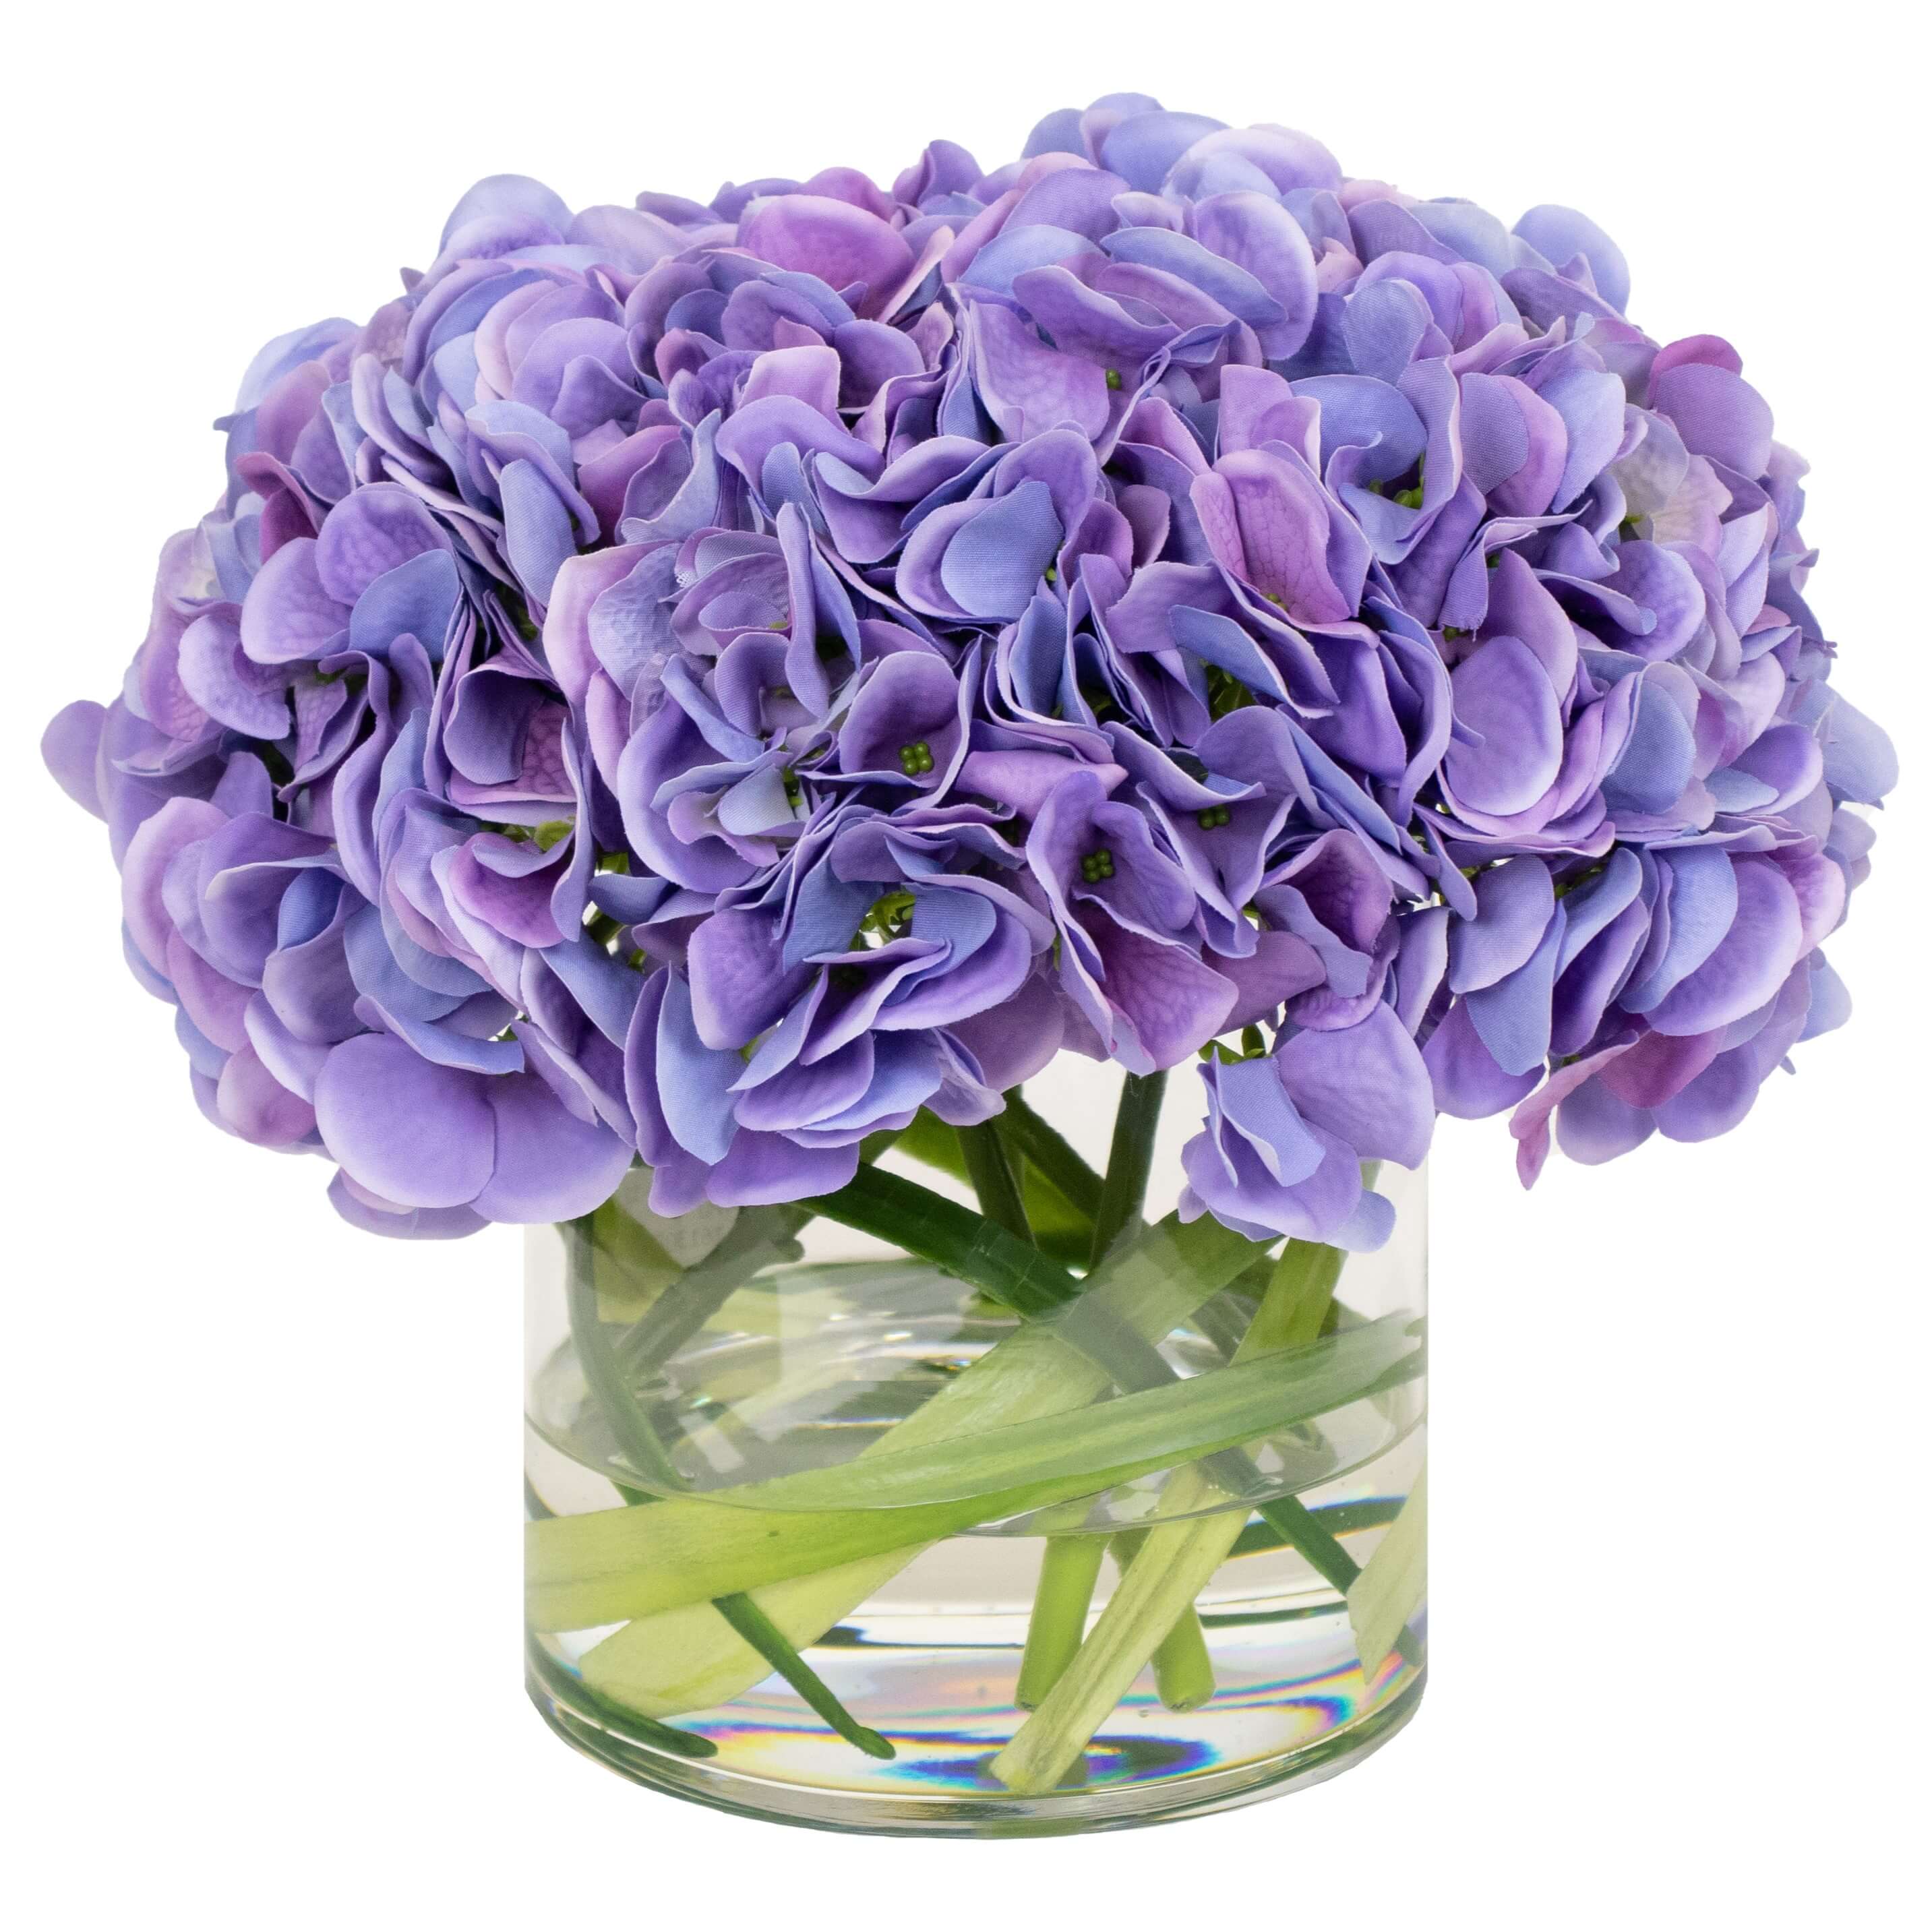 Fake hydrangea flower arrangement in glass vase